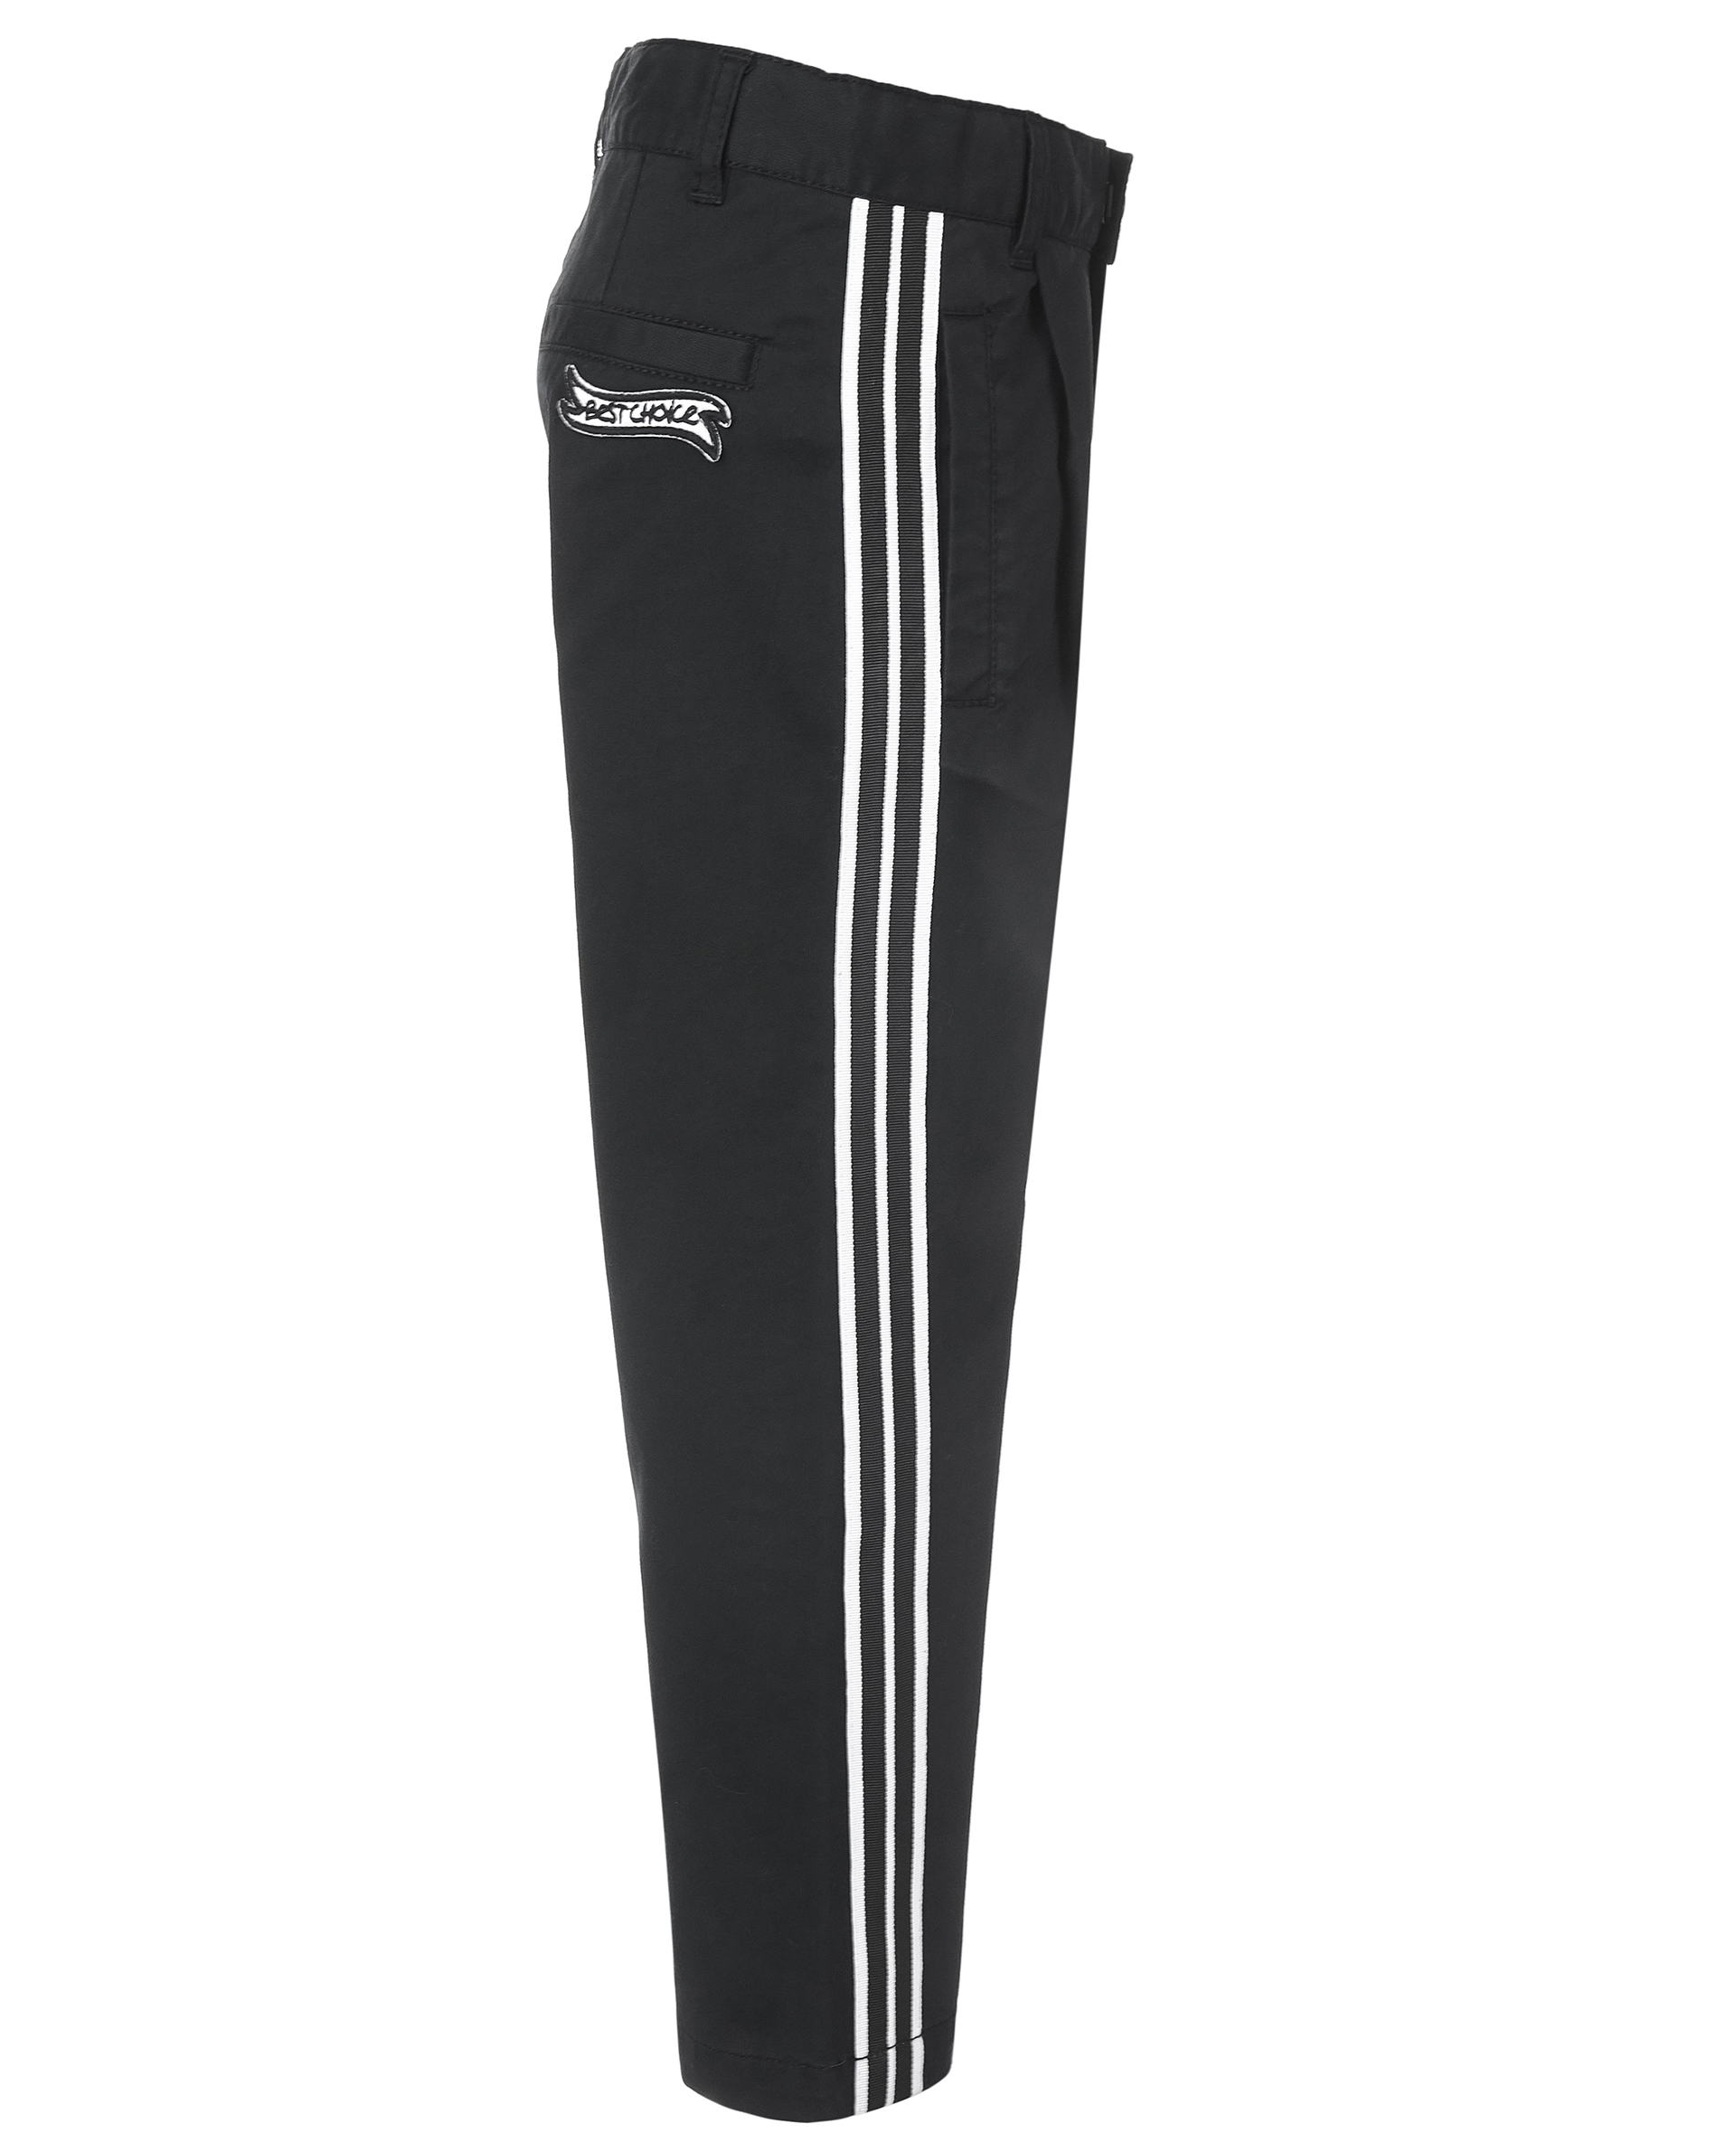 Черные брюки с лампасами Gulliver 11905BMC6301, размер 98, цвет черный - фото 3